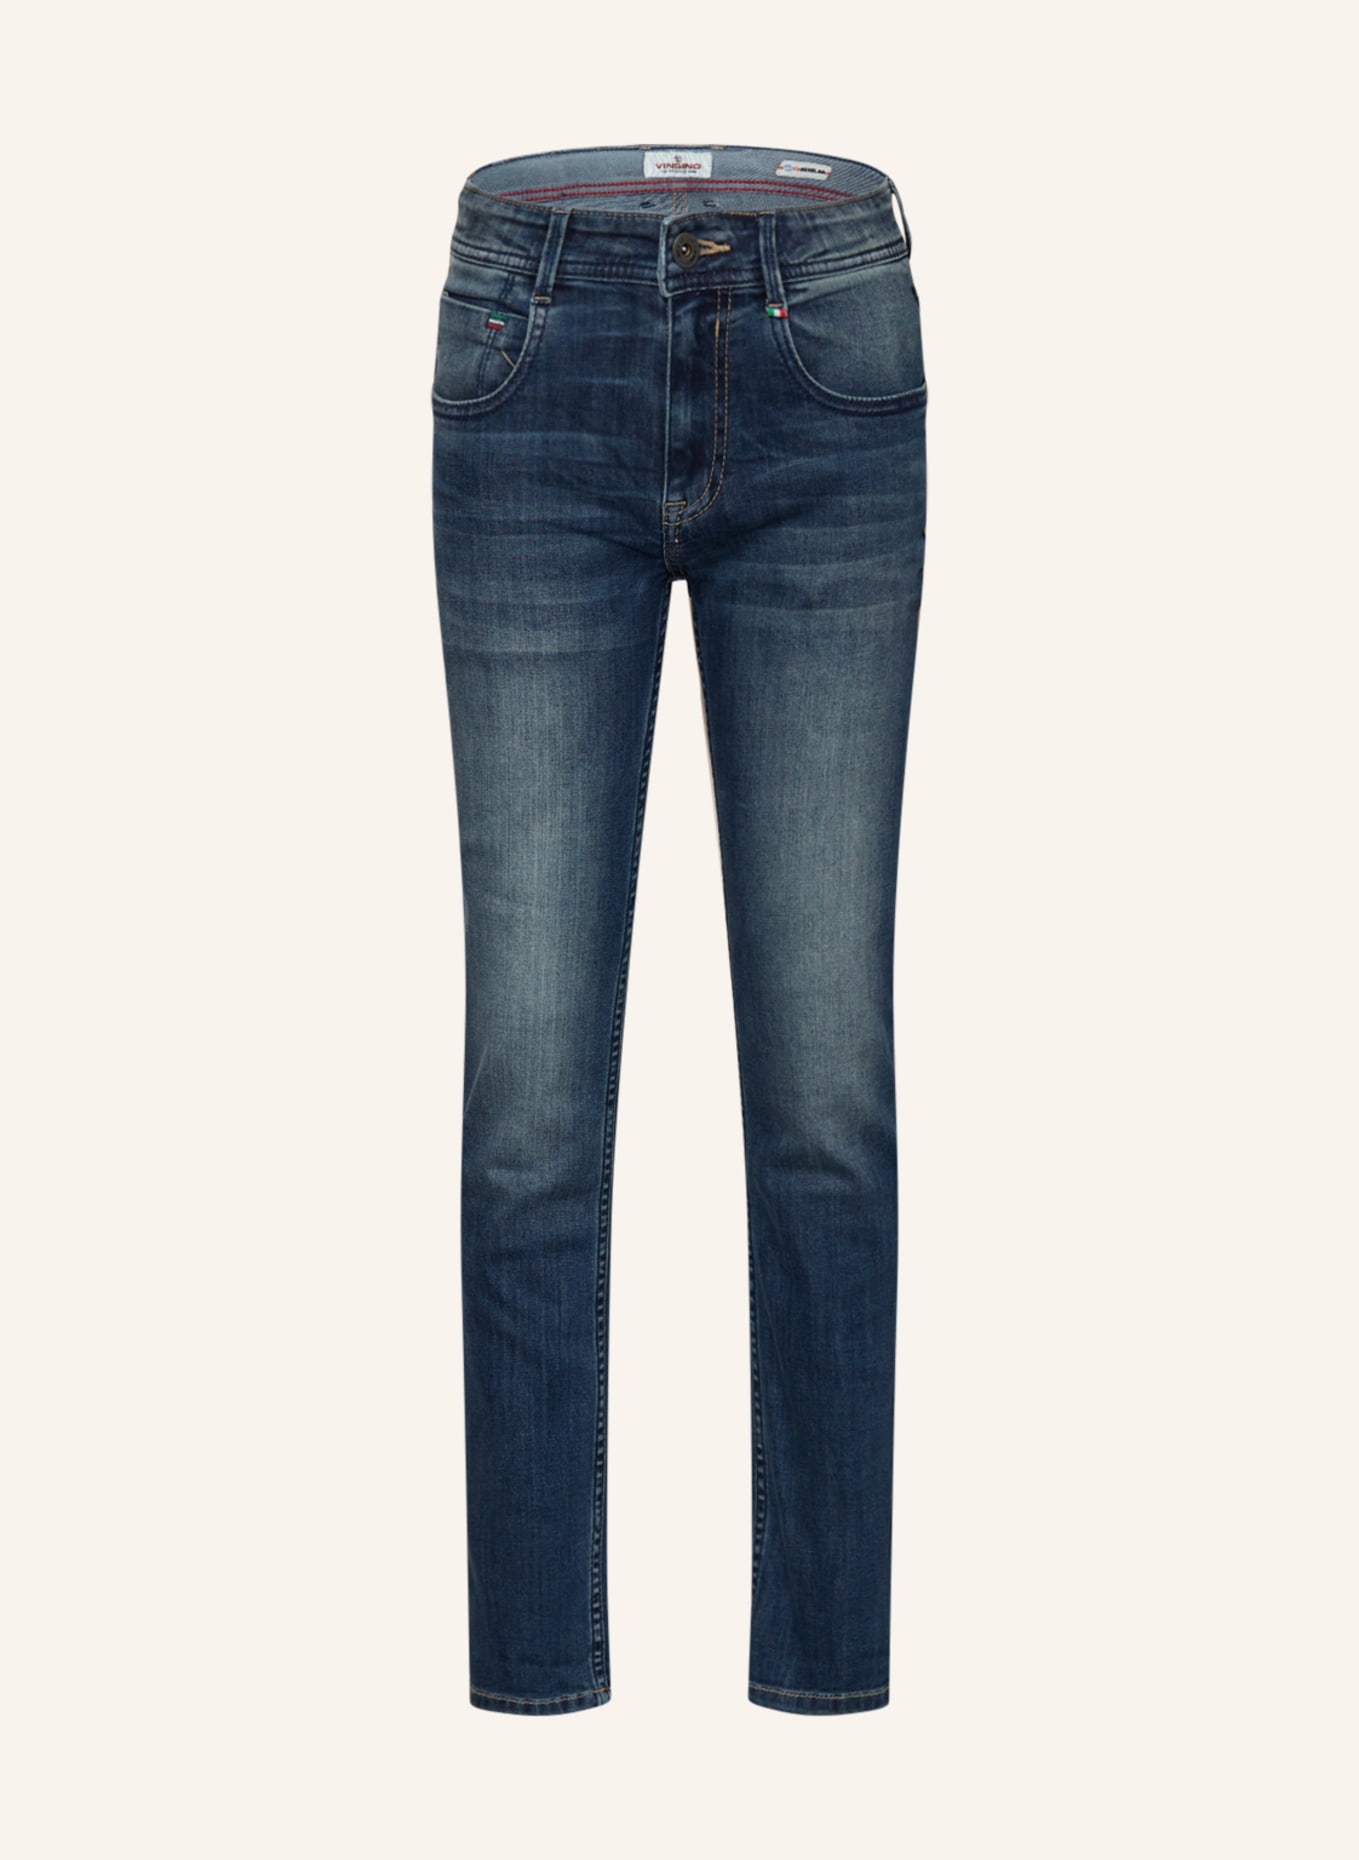 VINGINO Jeans BAGGIO Regular Fit, Farbe: CRUZIALE BLUE (Bild 1)